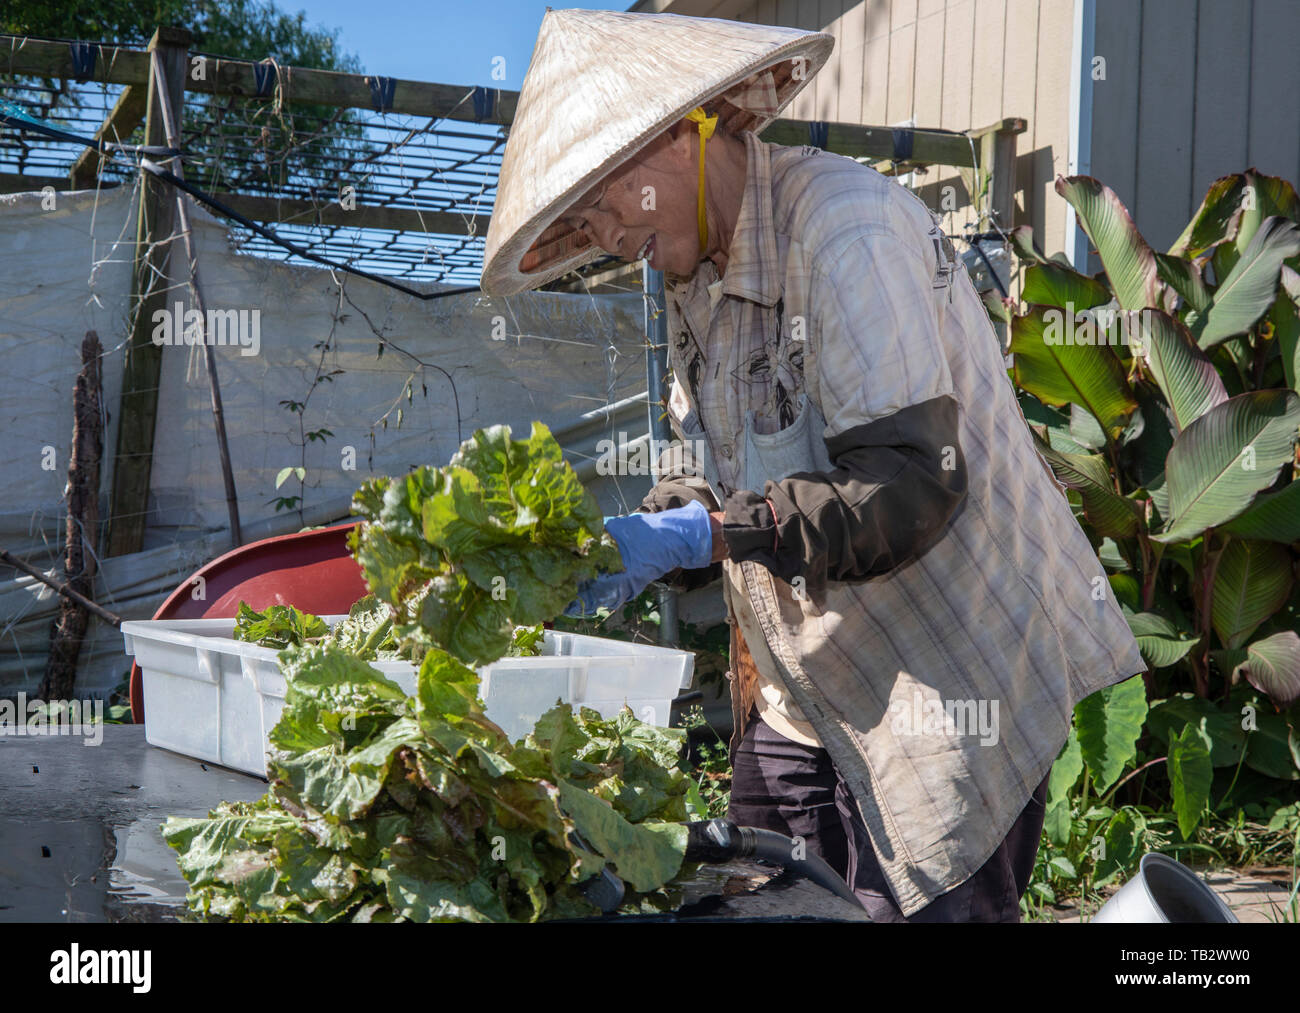 New Orleans, Louisiana - der Veggi Farmers Cooperative, eine kooperative städtischen Bauernhof in der vietnames Gemeinschaft von New Orleans. Die Coop ist ein Projekt von M Stockfoto